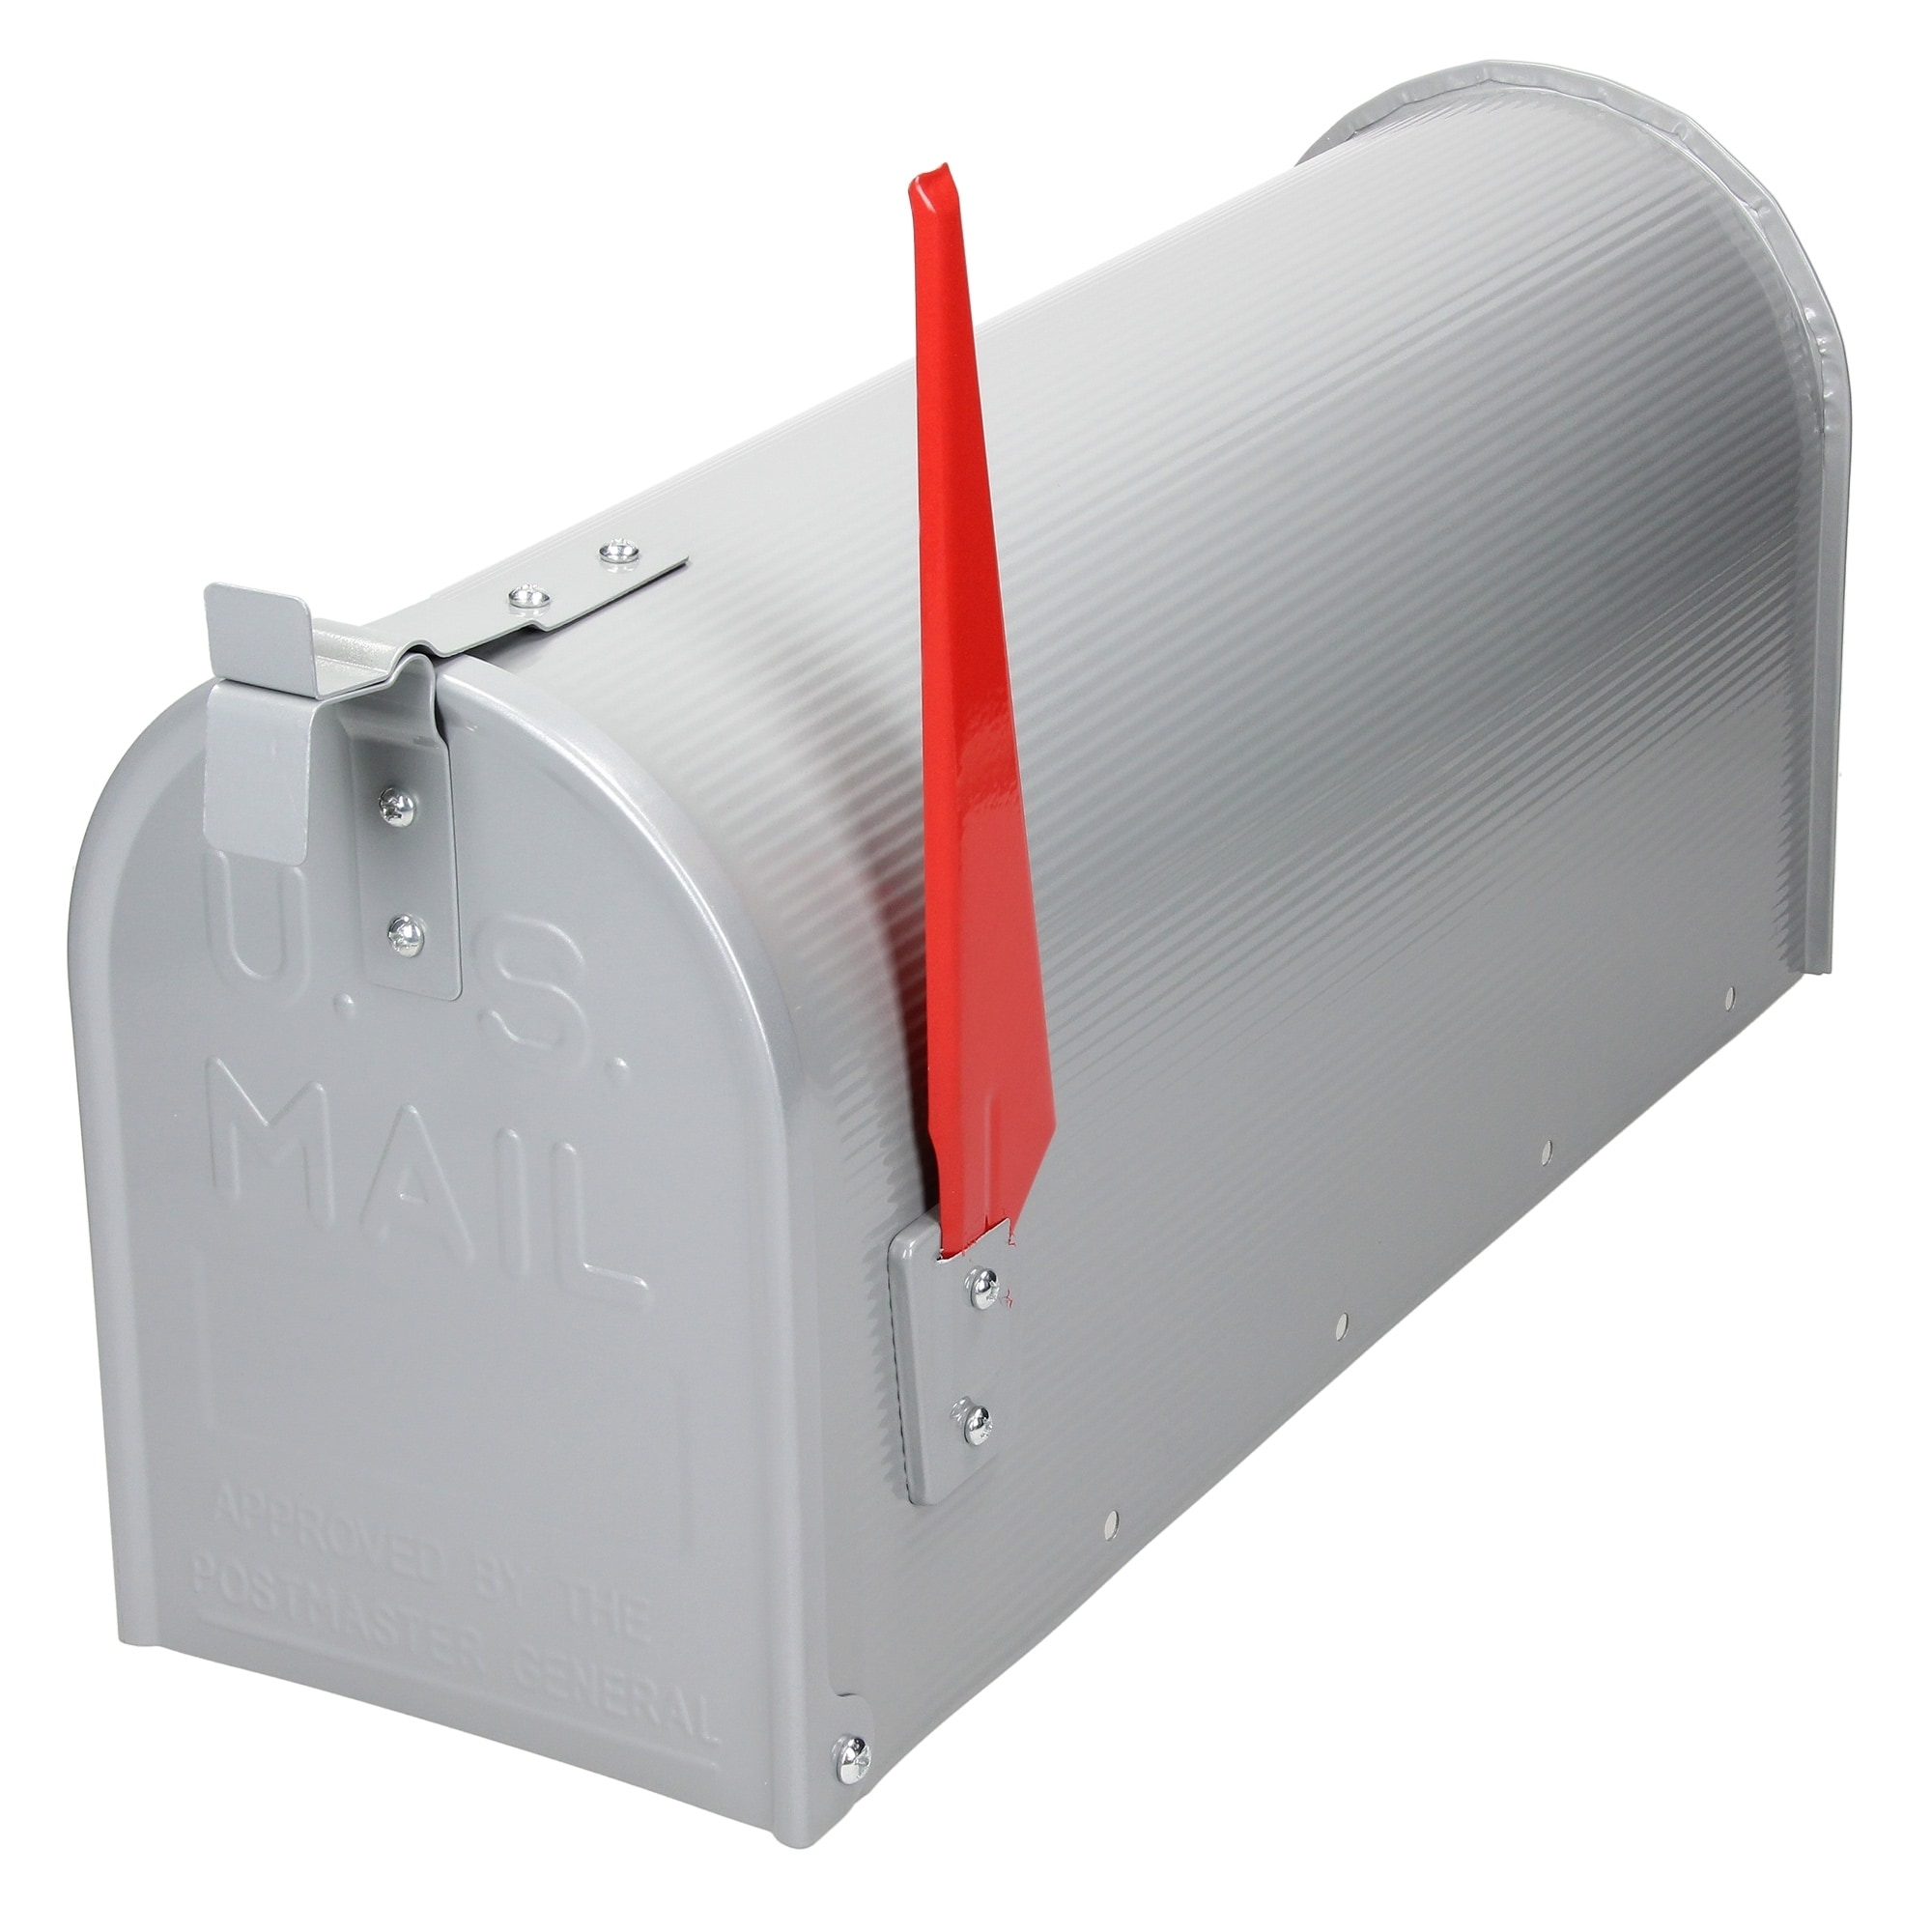 ML Design U.S. Postkasse med drejet rødt flag, aluminium, 47,5x16,5x22.5cm,